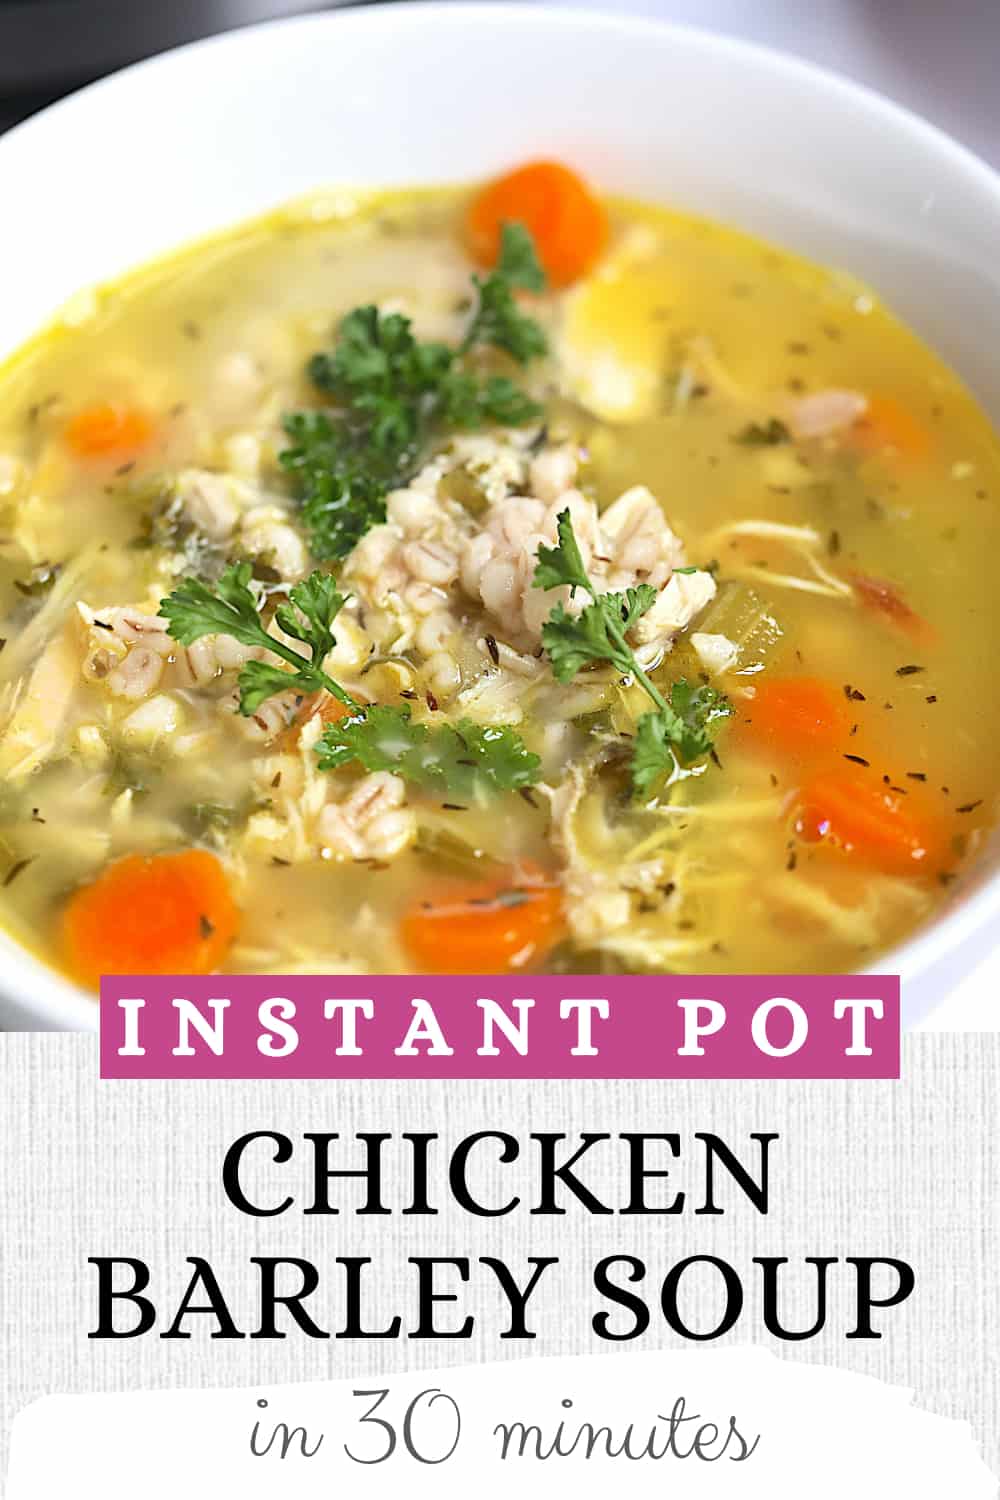 Instant Pot Barley Soup – Tasty Oven